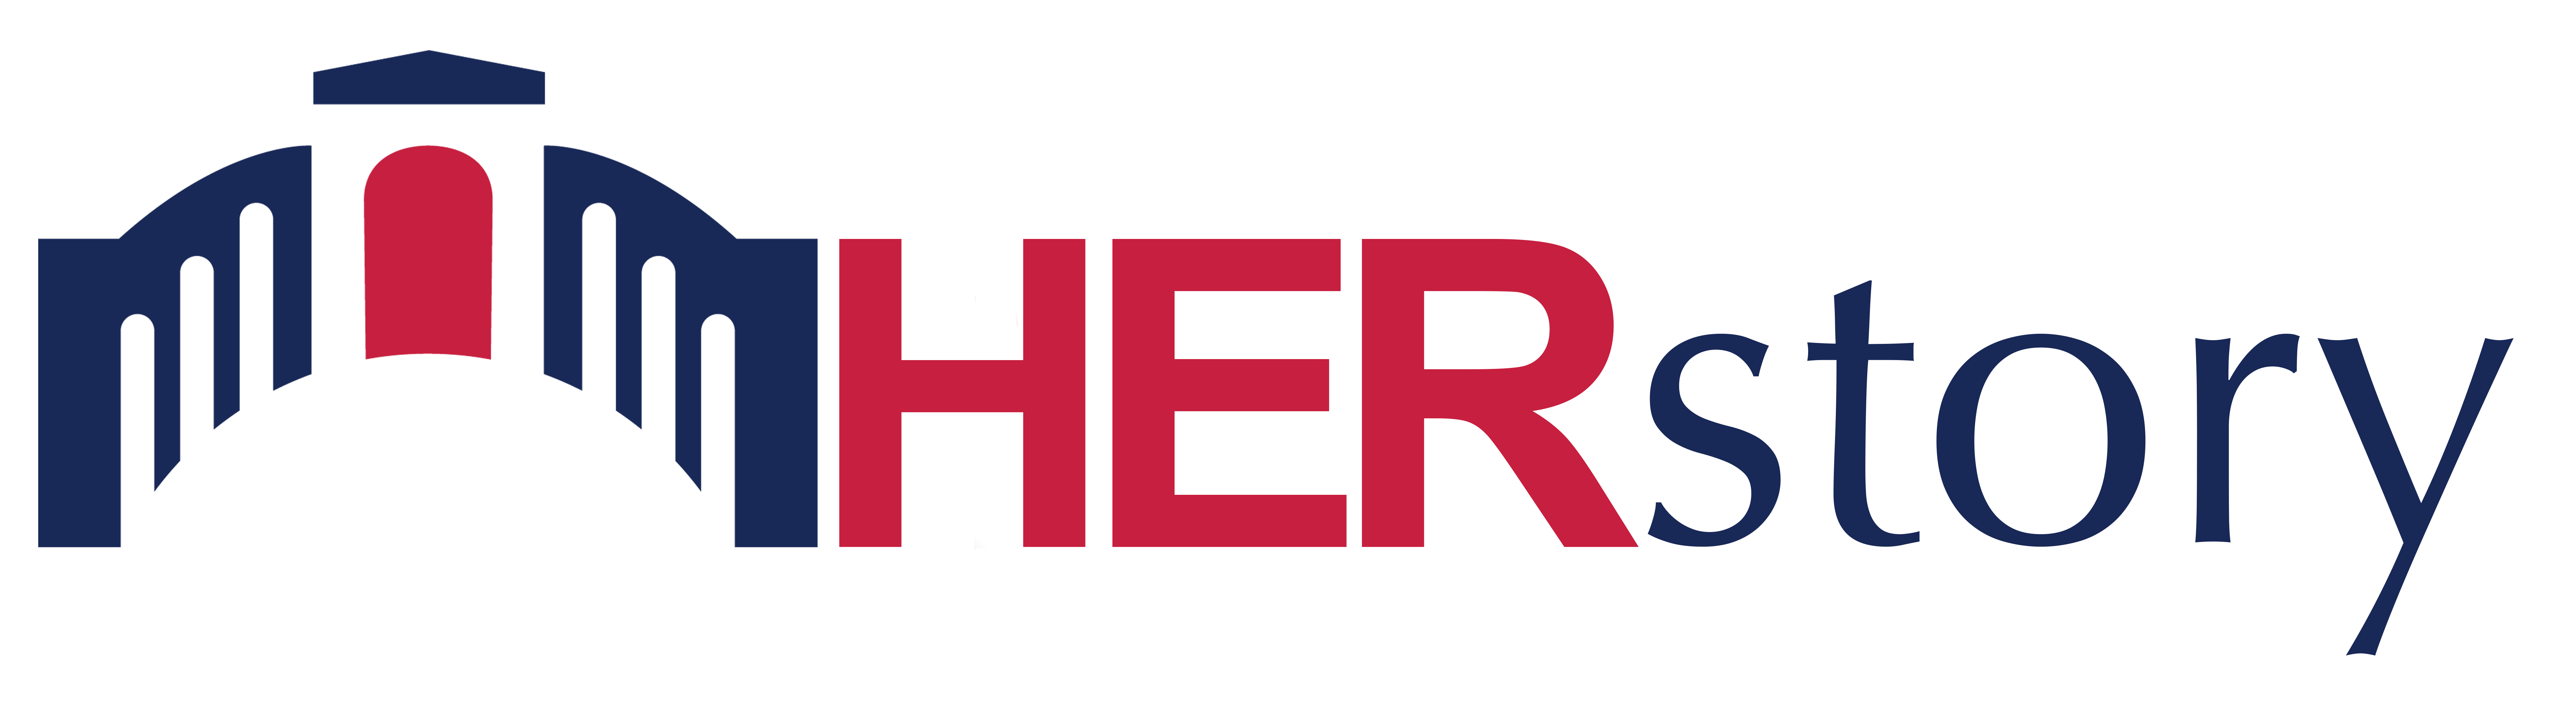 HERstory logo